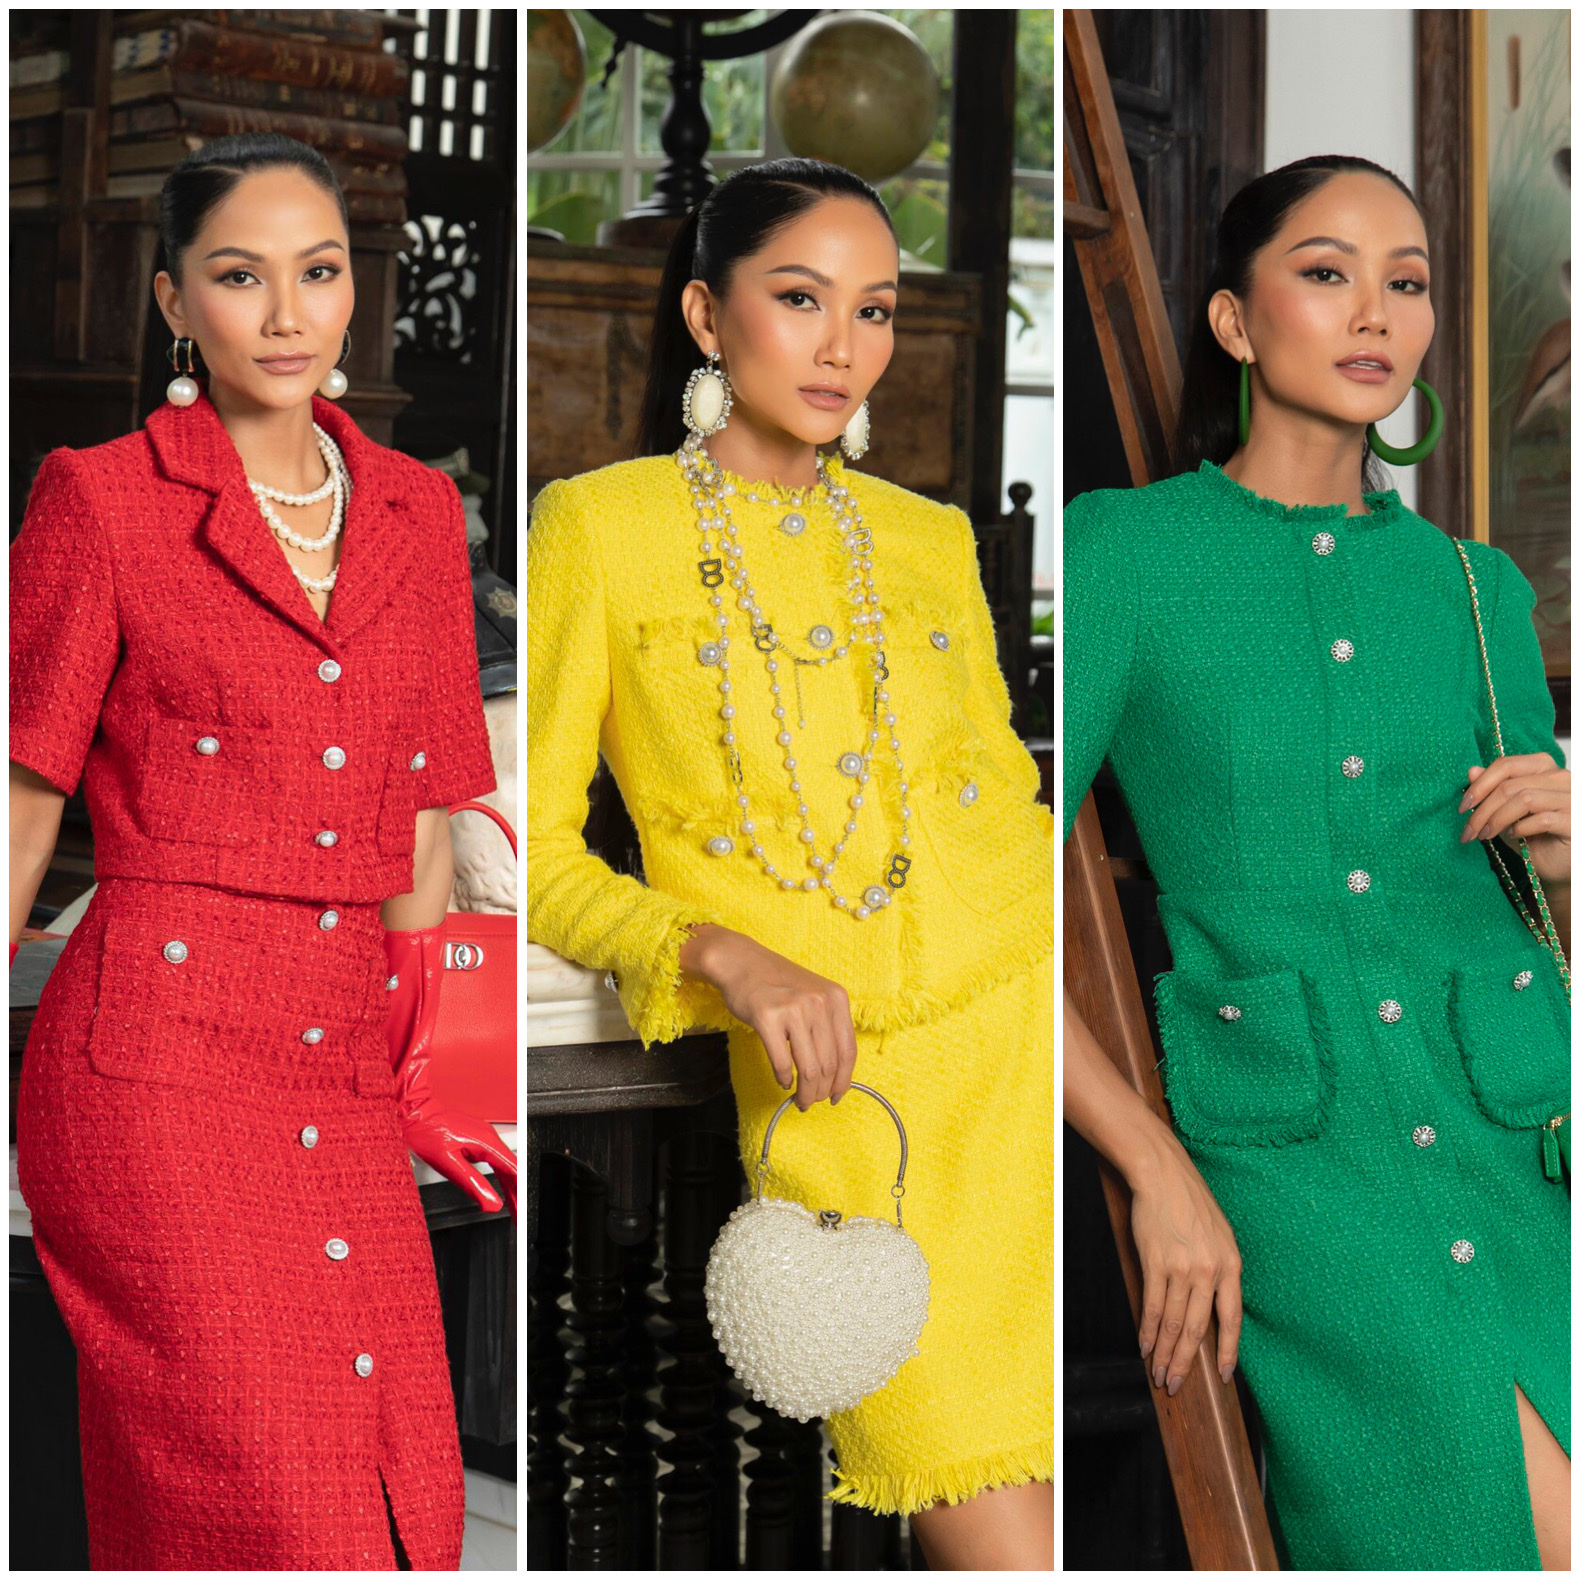 Hoa hậu H’Hen Niê gợi ý xu hướng thời trang mùa đông với vải tweed - Ảnh 1.